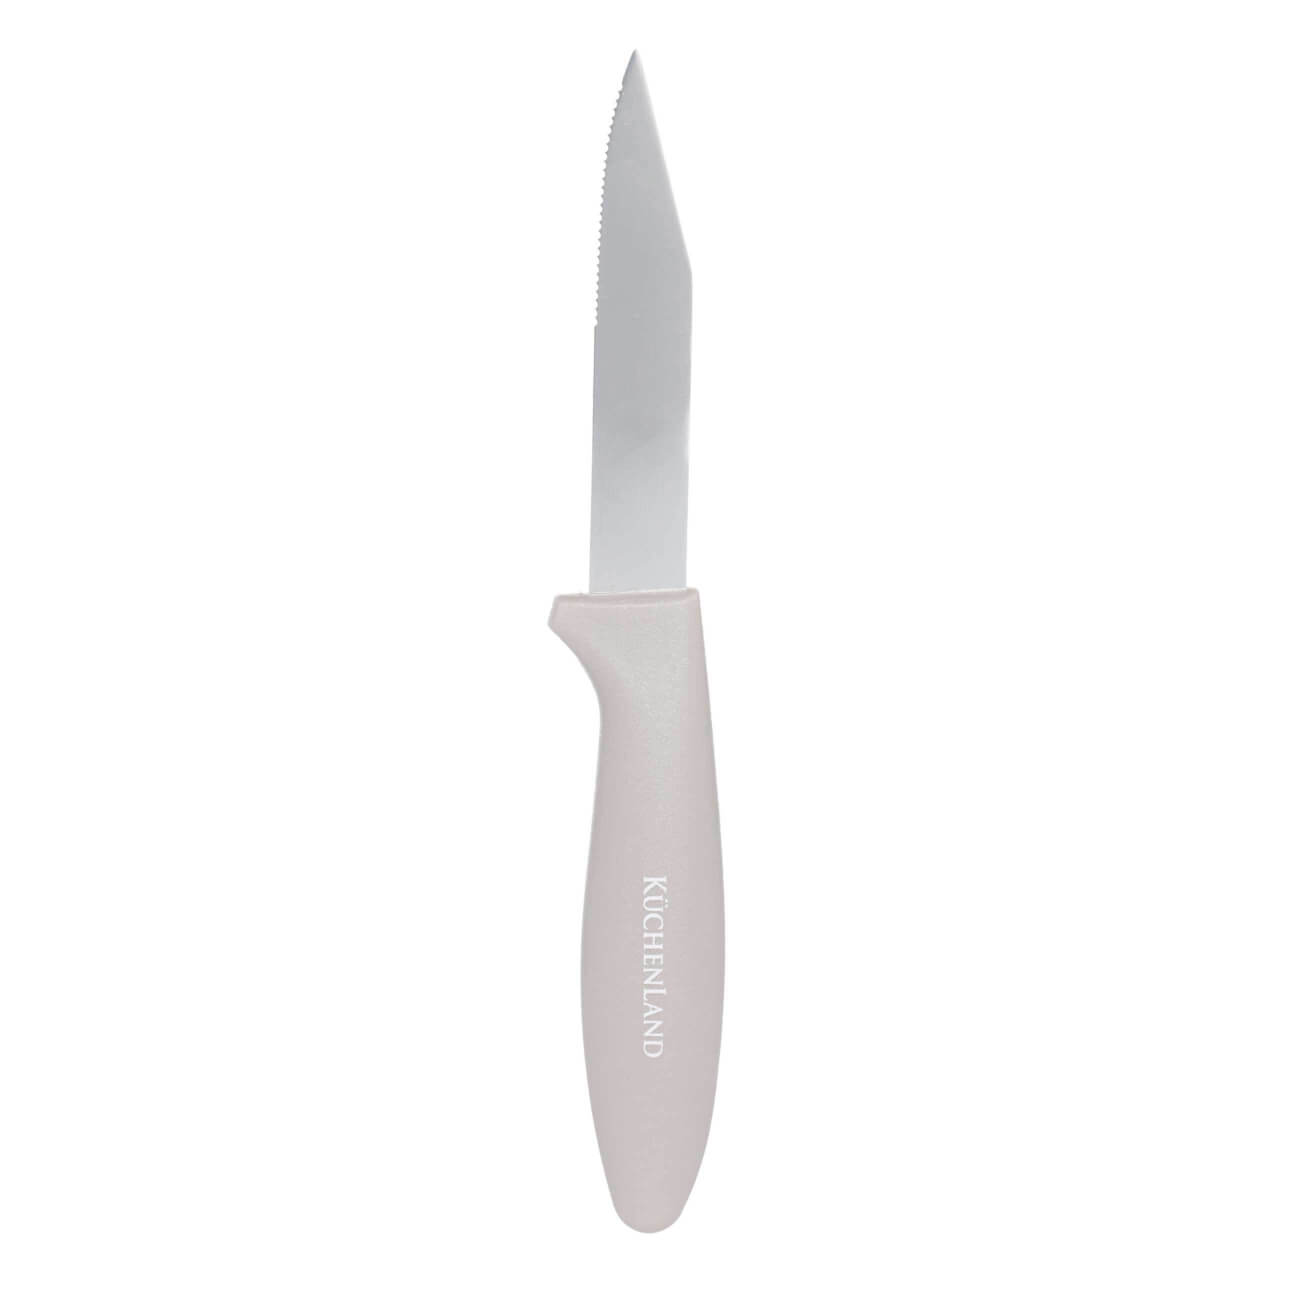 Нож для чистки овощей, 8 см, сталь/пластик, серо-коричневый, Regular